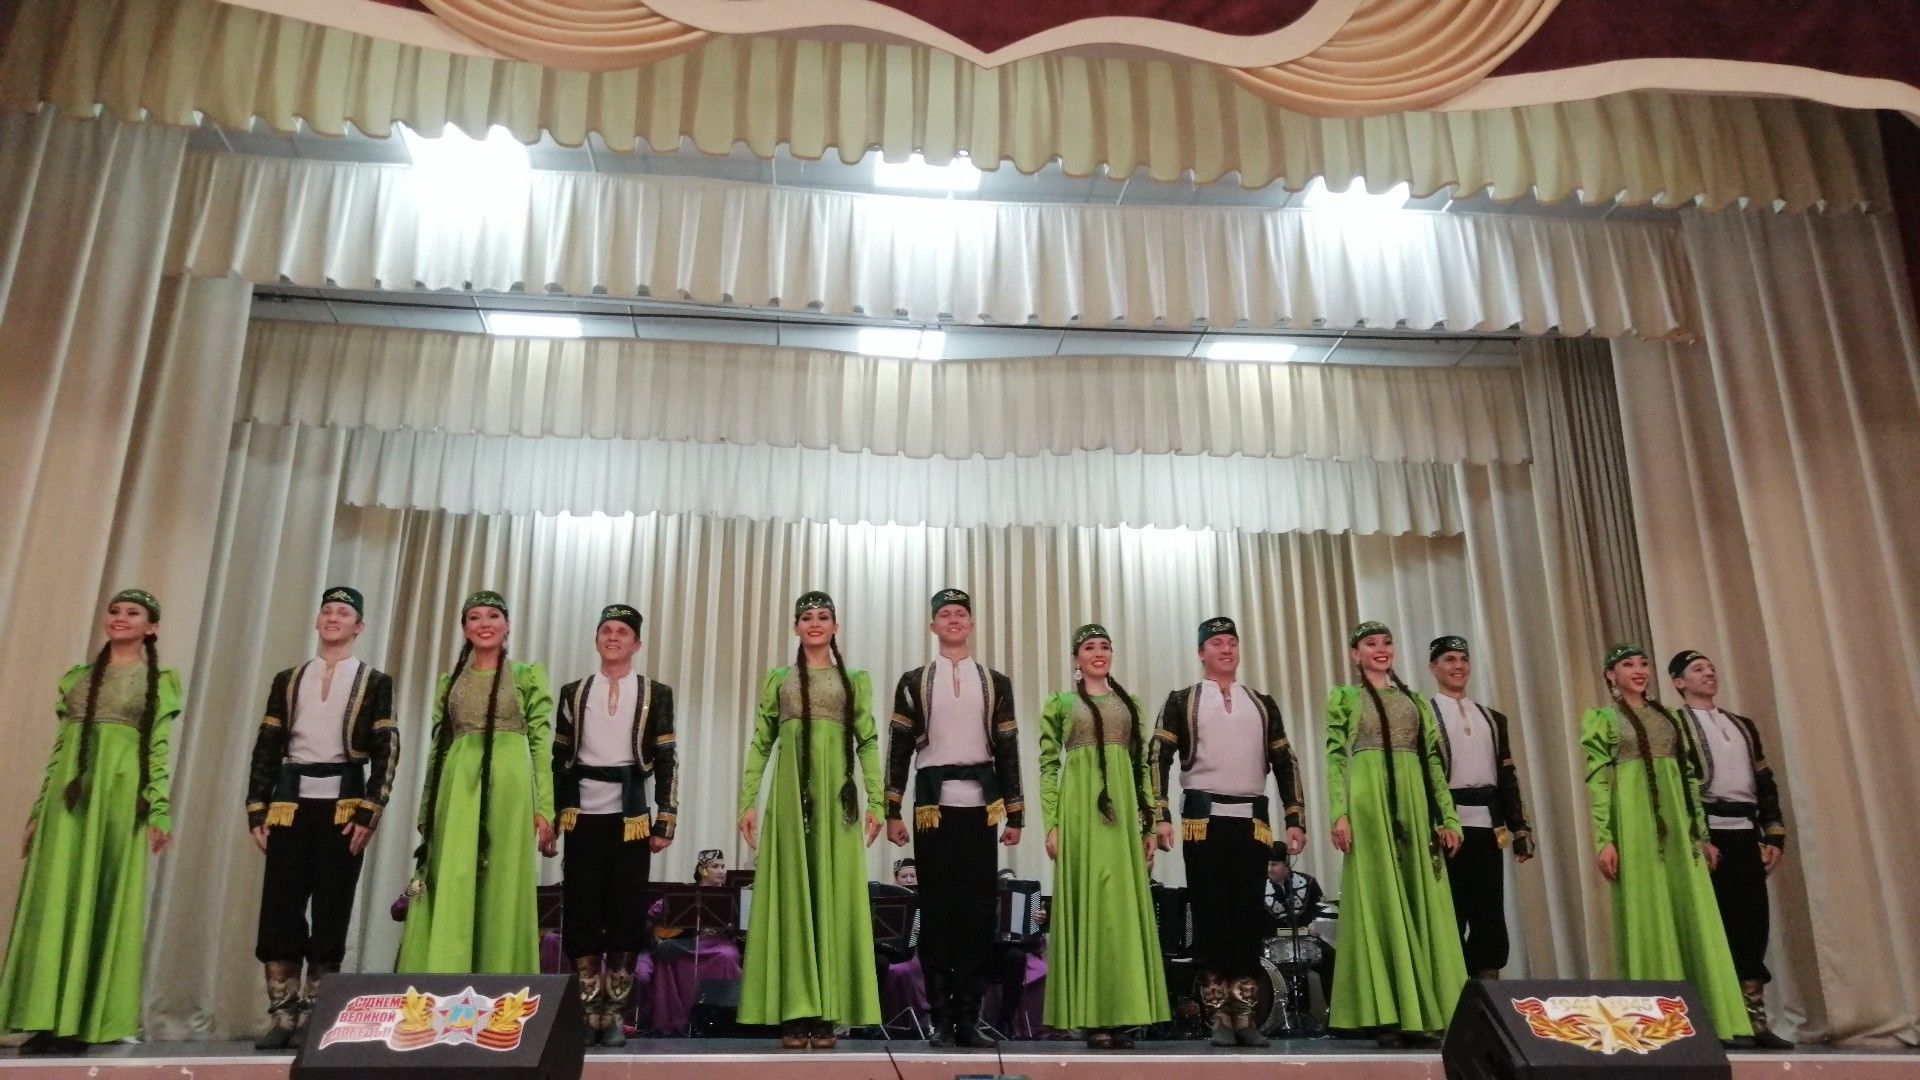 В селе Кощаково состоялся концерт Государственного ансамбля песни и танца Республики Татарстан